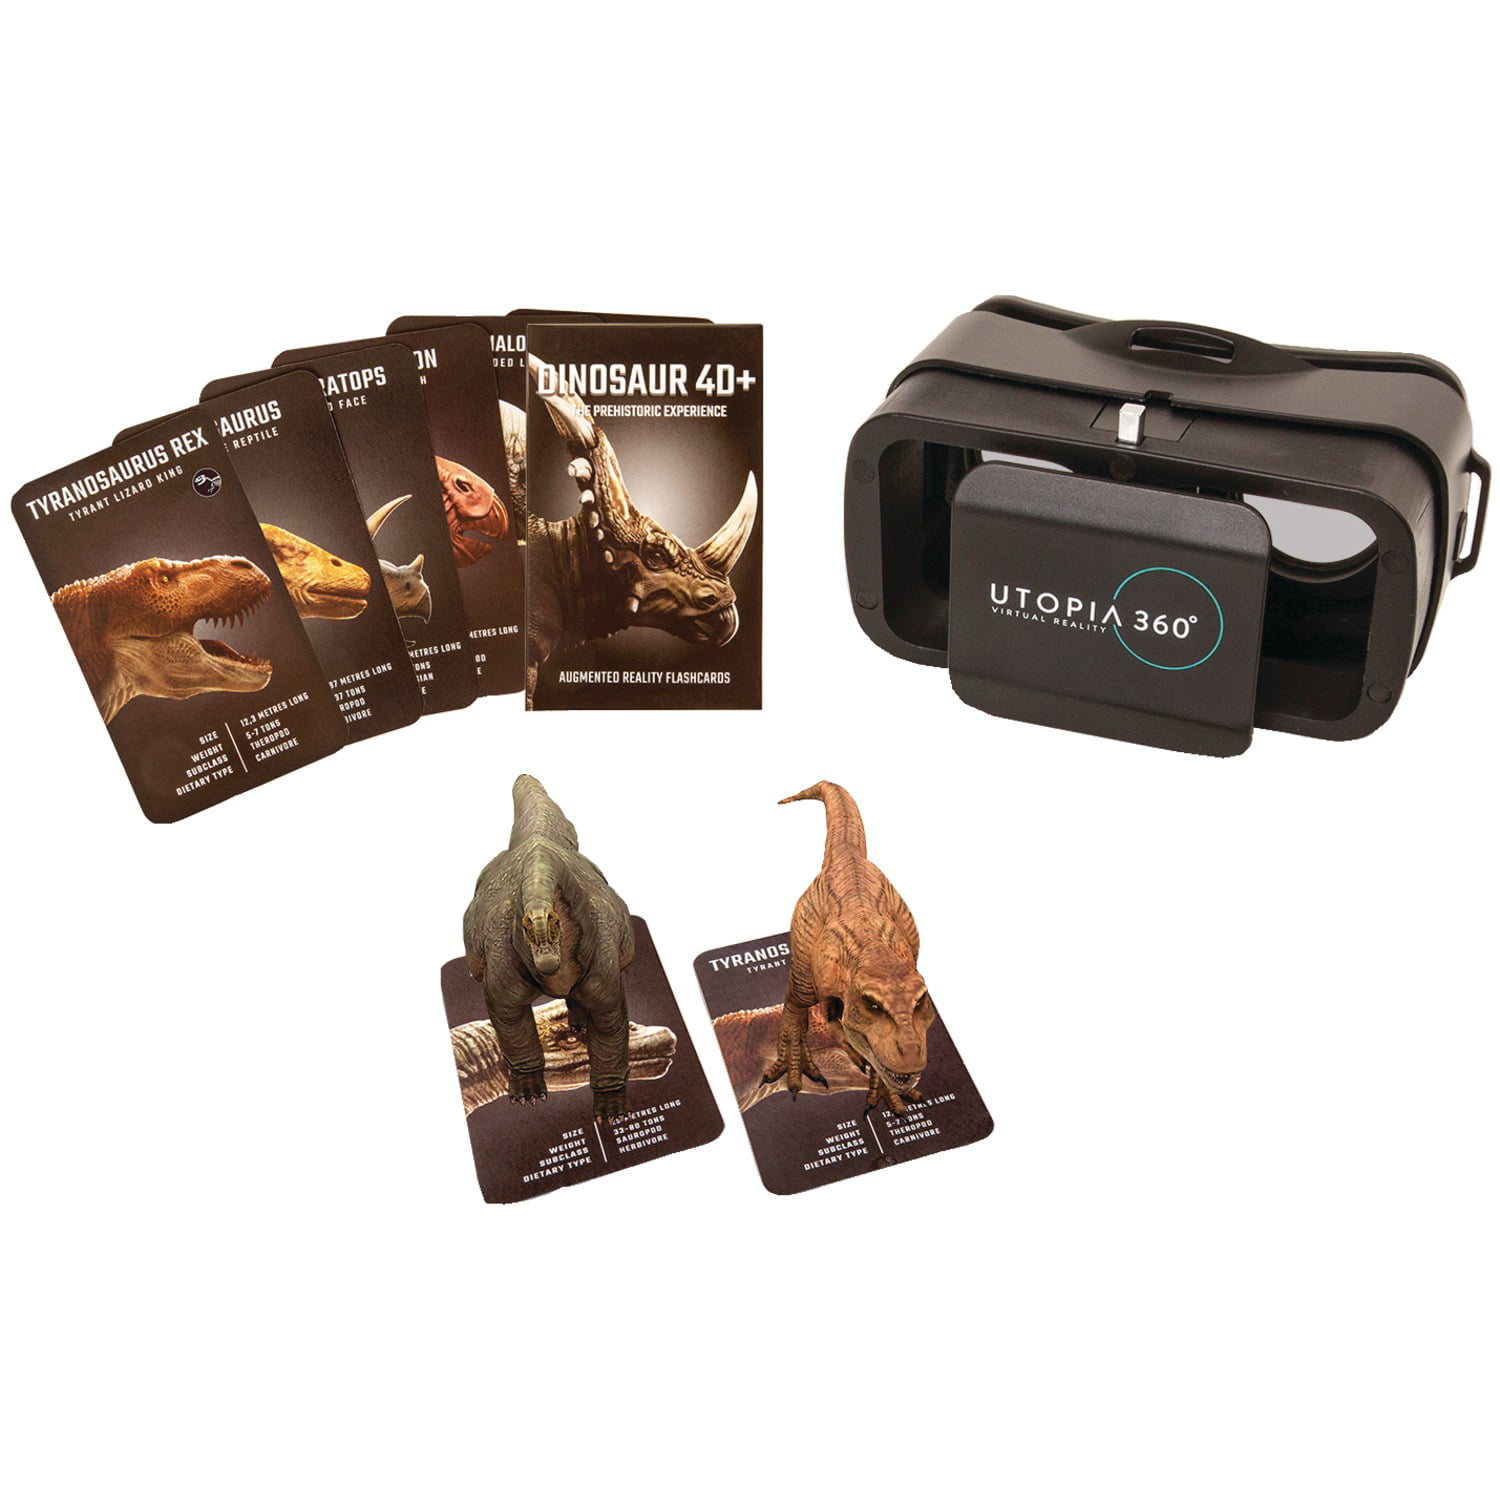 Utopia 360 ° expérience de dinosaure Cartes et VR casque de réalité augmentée à partir de Retrak 4d 